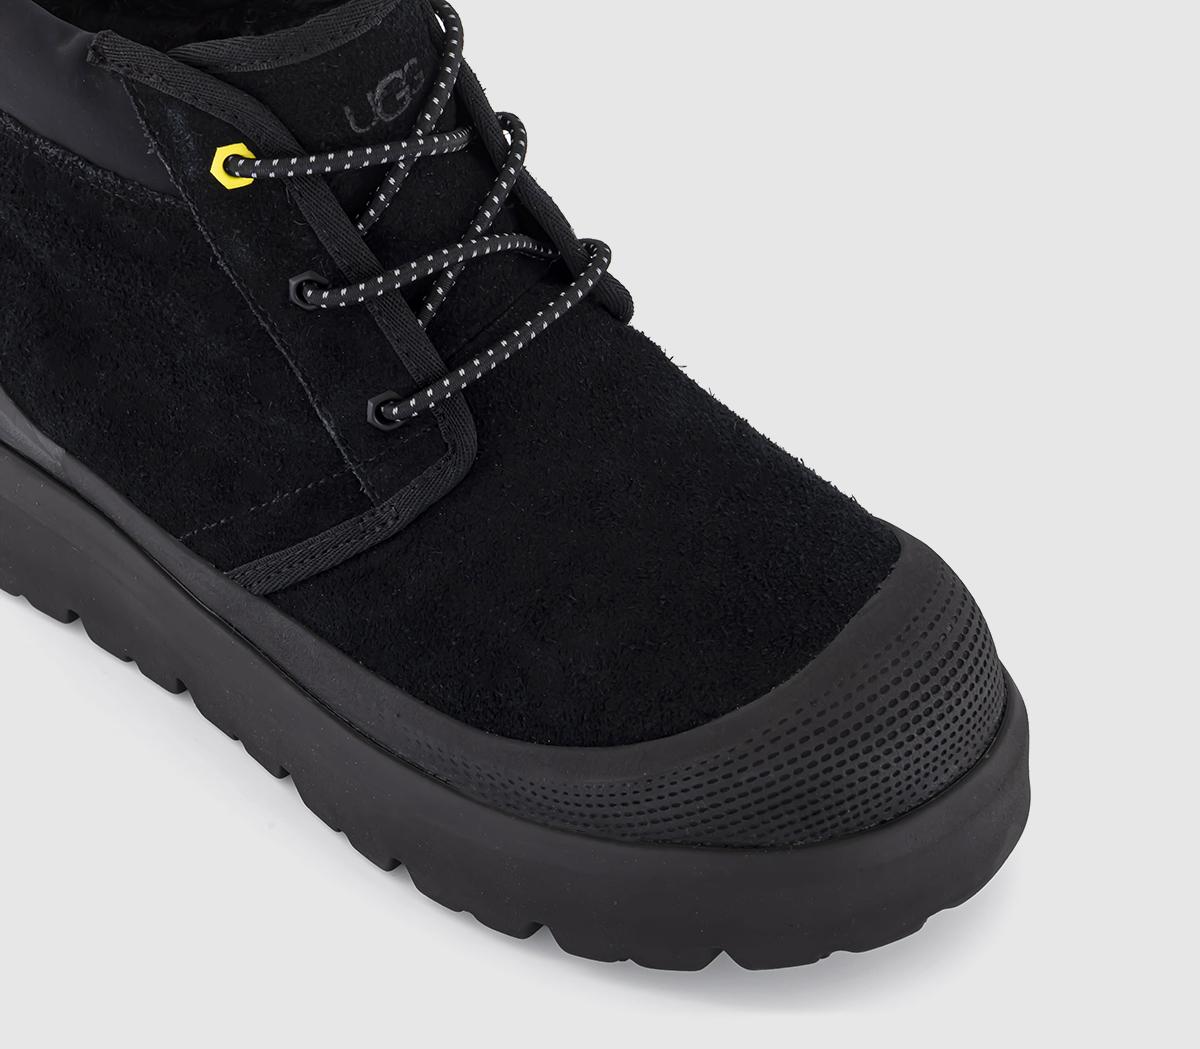 UGG Neumel Weather Hybrid Boots Black - Men’s Boots